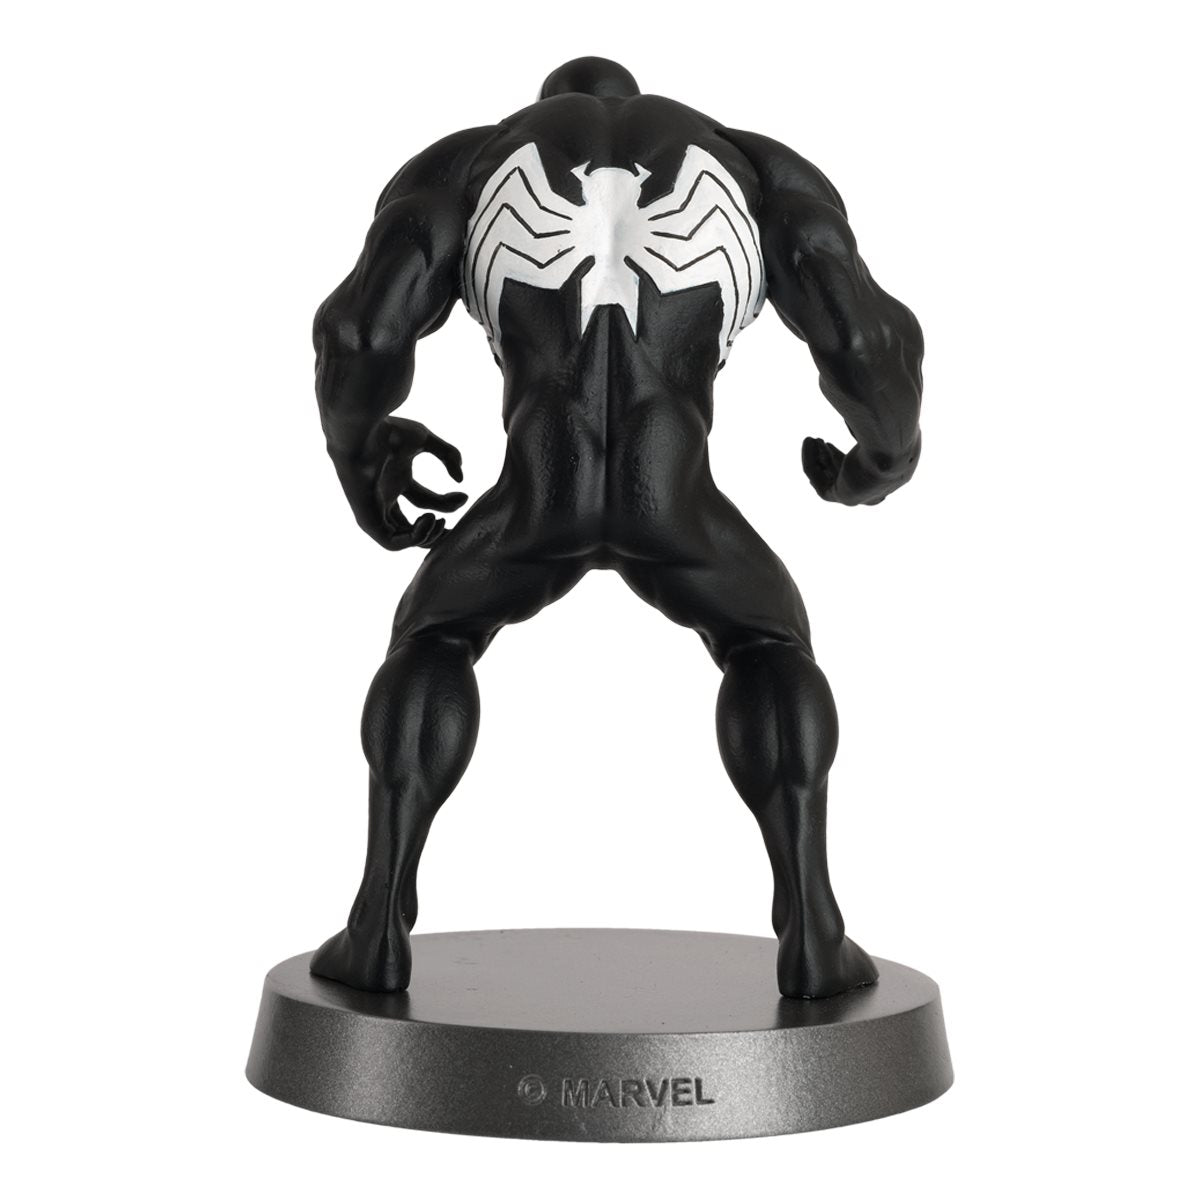 Marvel - Venom Heavyweights Die-Cast Figurine